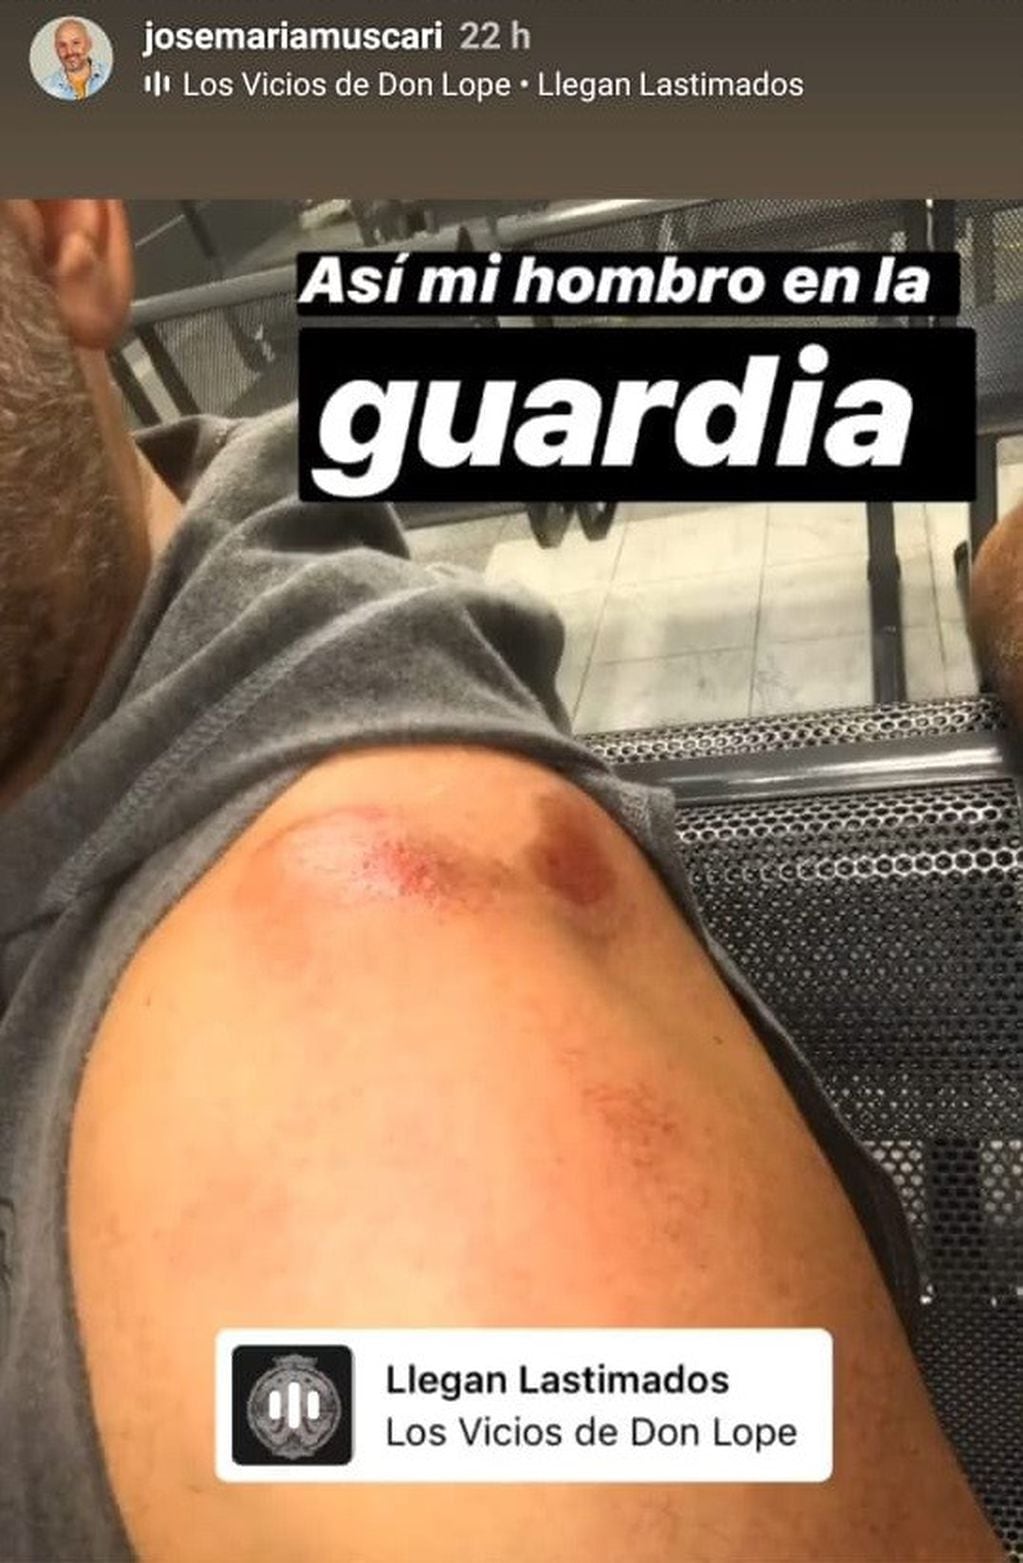 José María Muscari sufrió un accidente (Instagram)